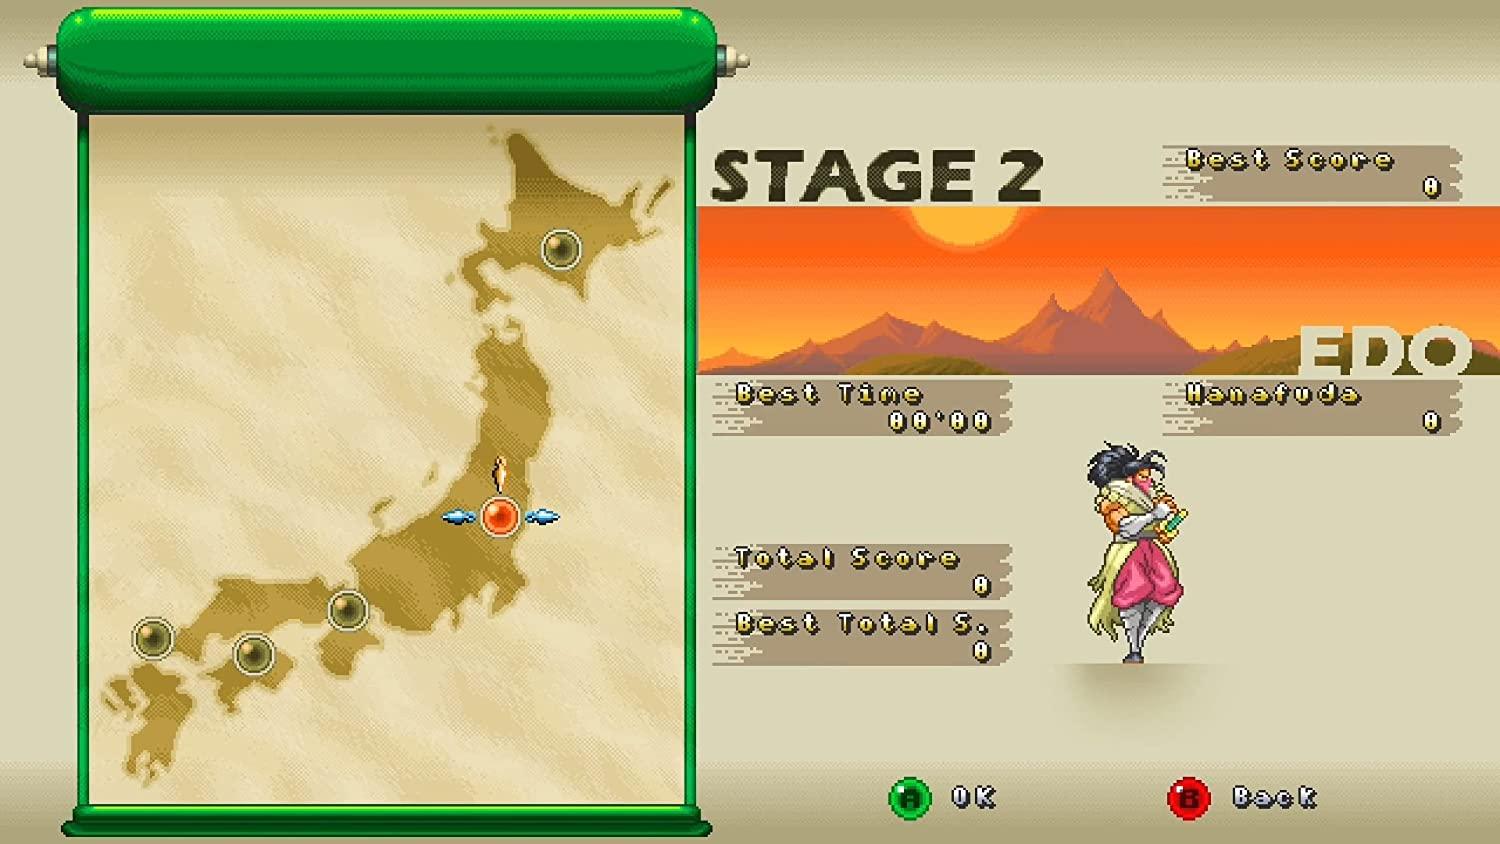 Ganryu 2 - Hakuma Kojiro (Nintendo Switch) - GameStore.mt | Powered by Flutisat